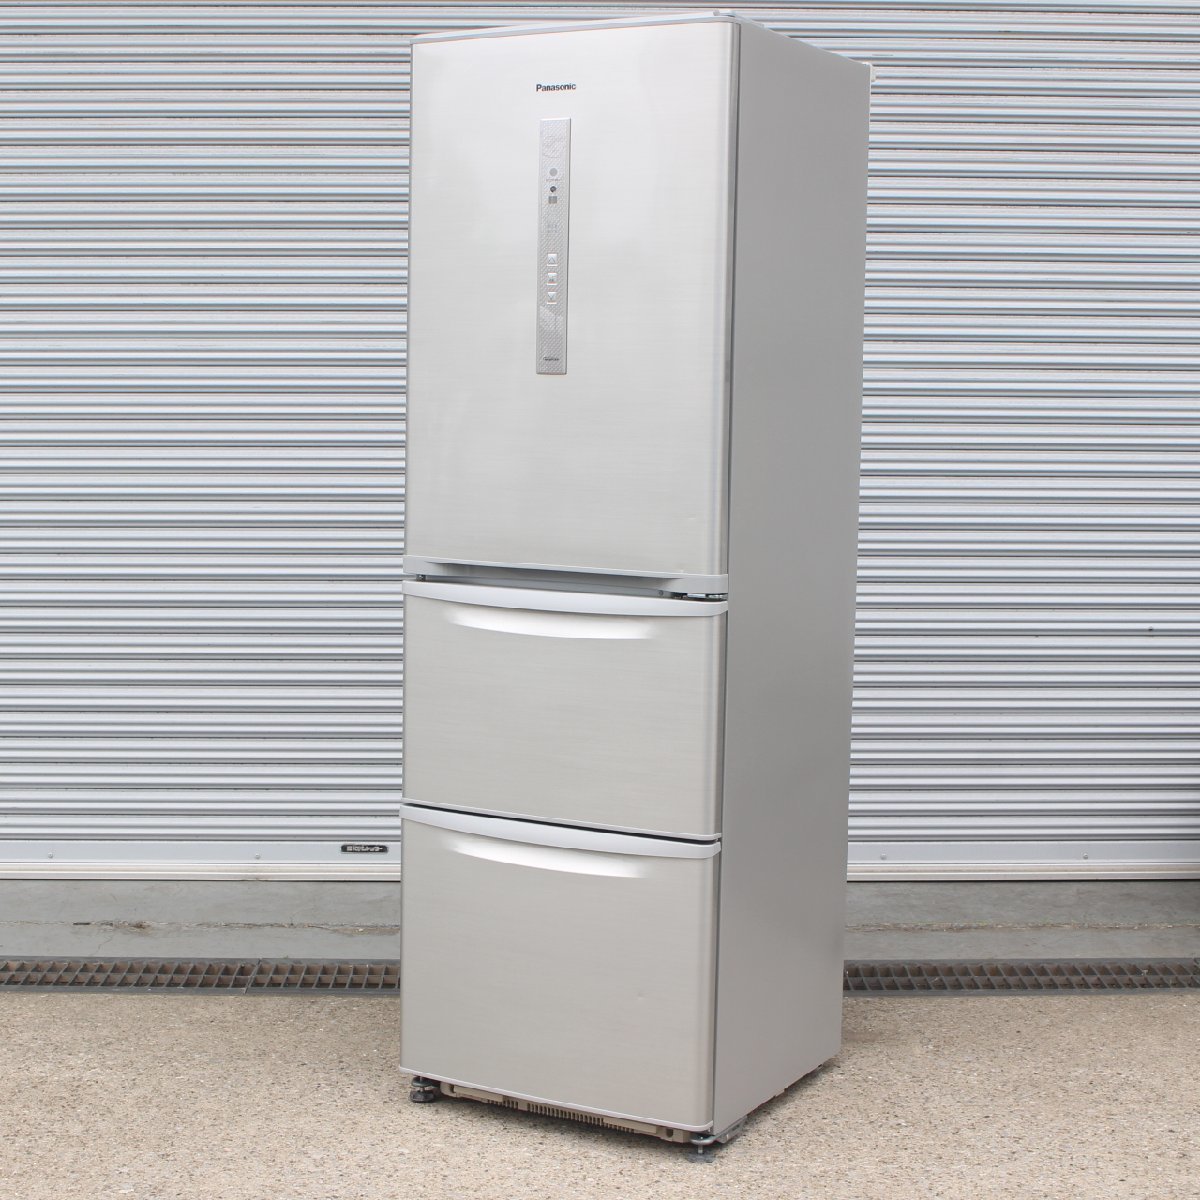 川崎市幸区にて パナソニック 冷凍冷蔵庫 NR-C37DM-S 2016年製 を出張買取させて頂きました。